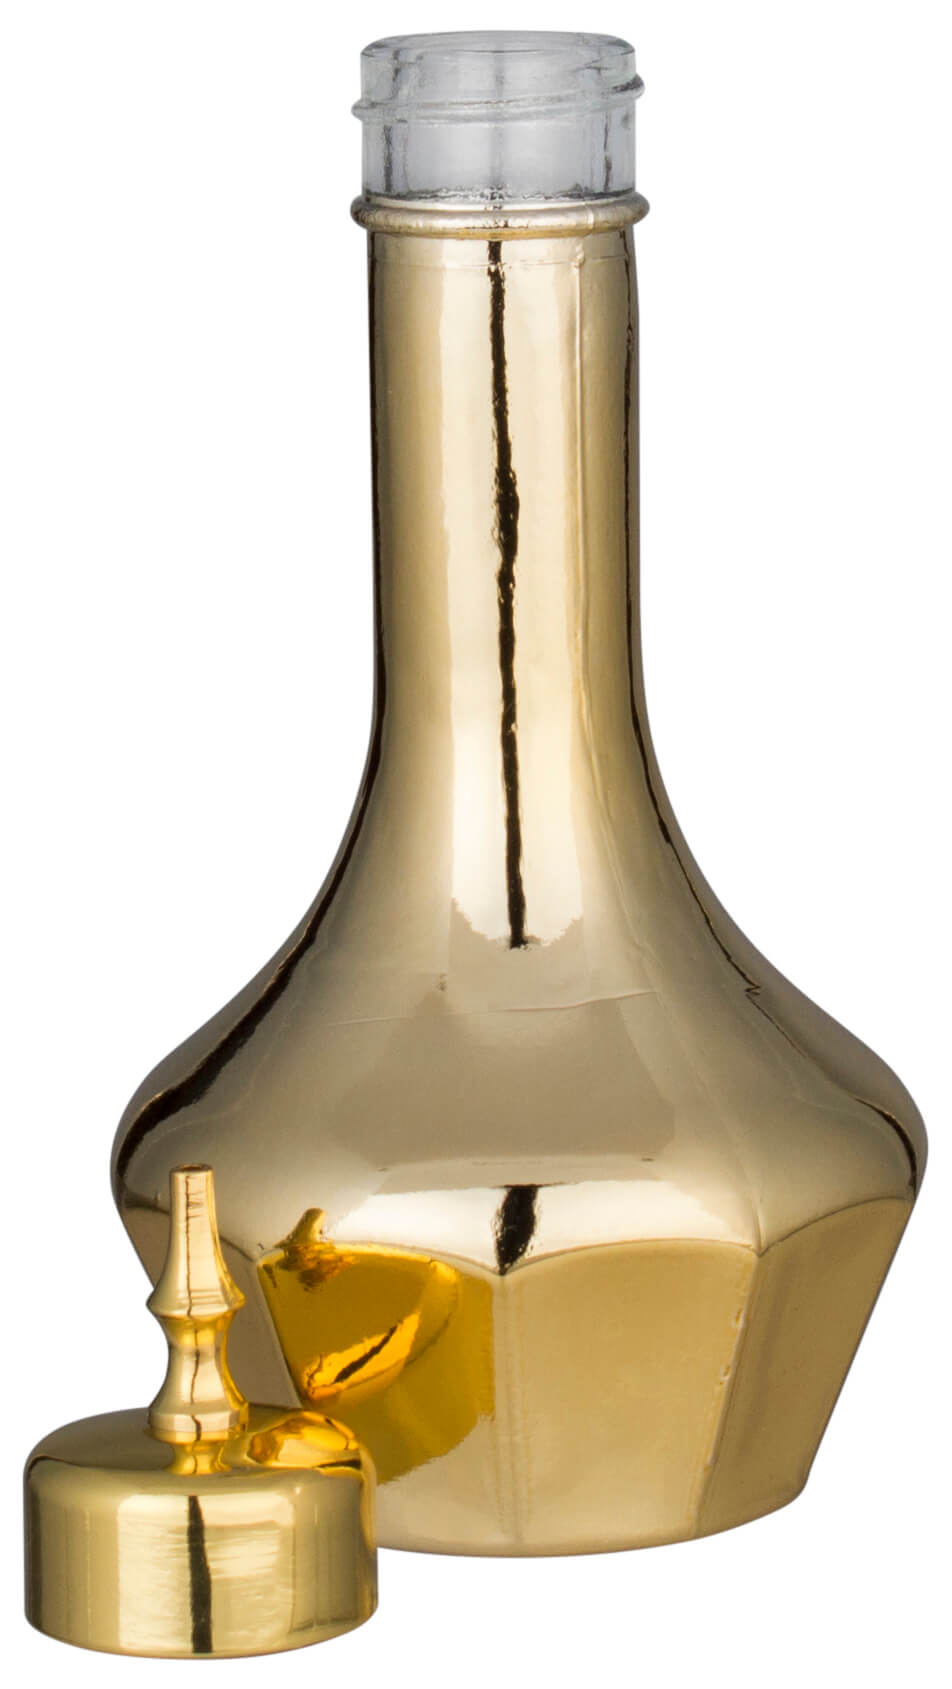 Bitterflasche Japanstyle, Prime Bar, goldfarben - 50ml